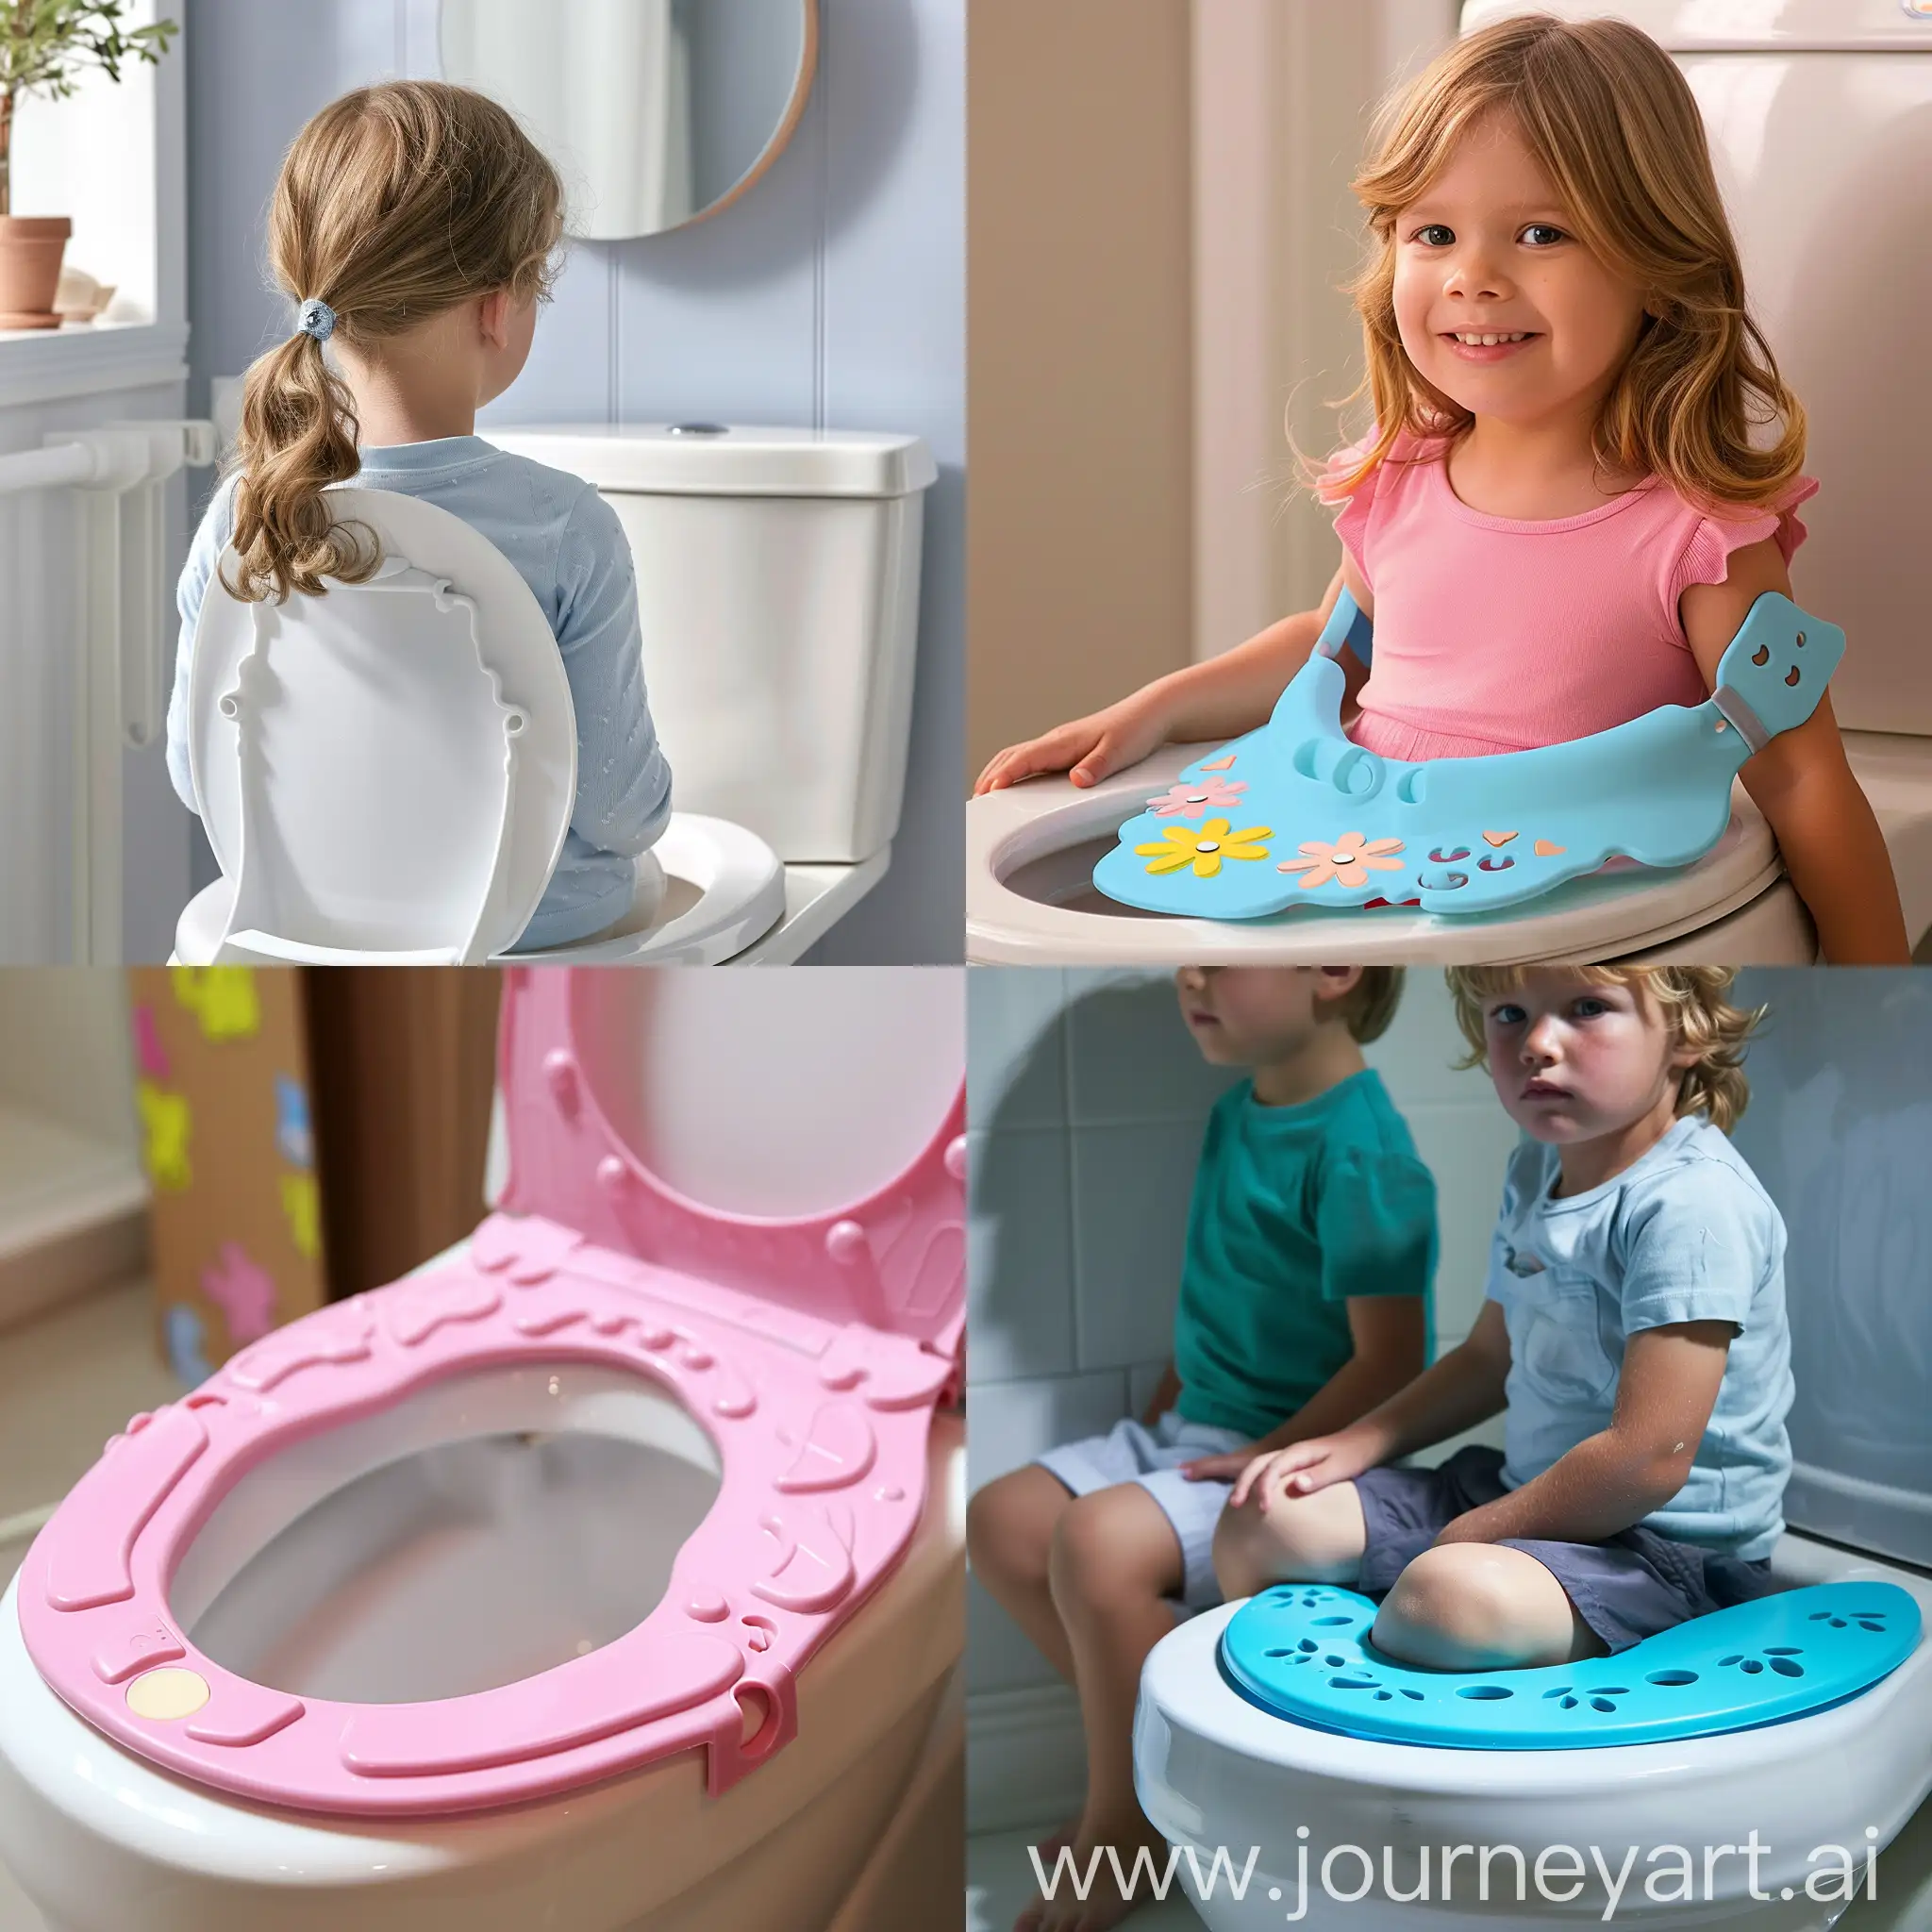 Playful-Kids-Toilet-Seat-Splash-Guard-Fun